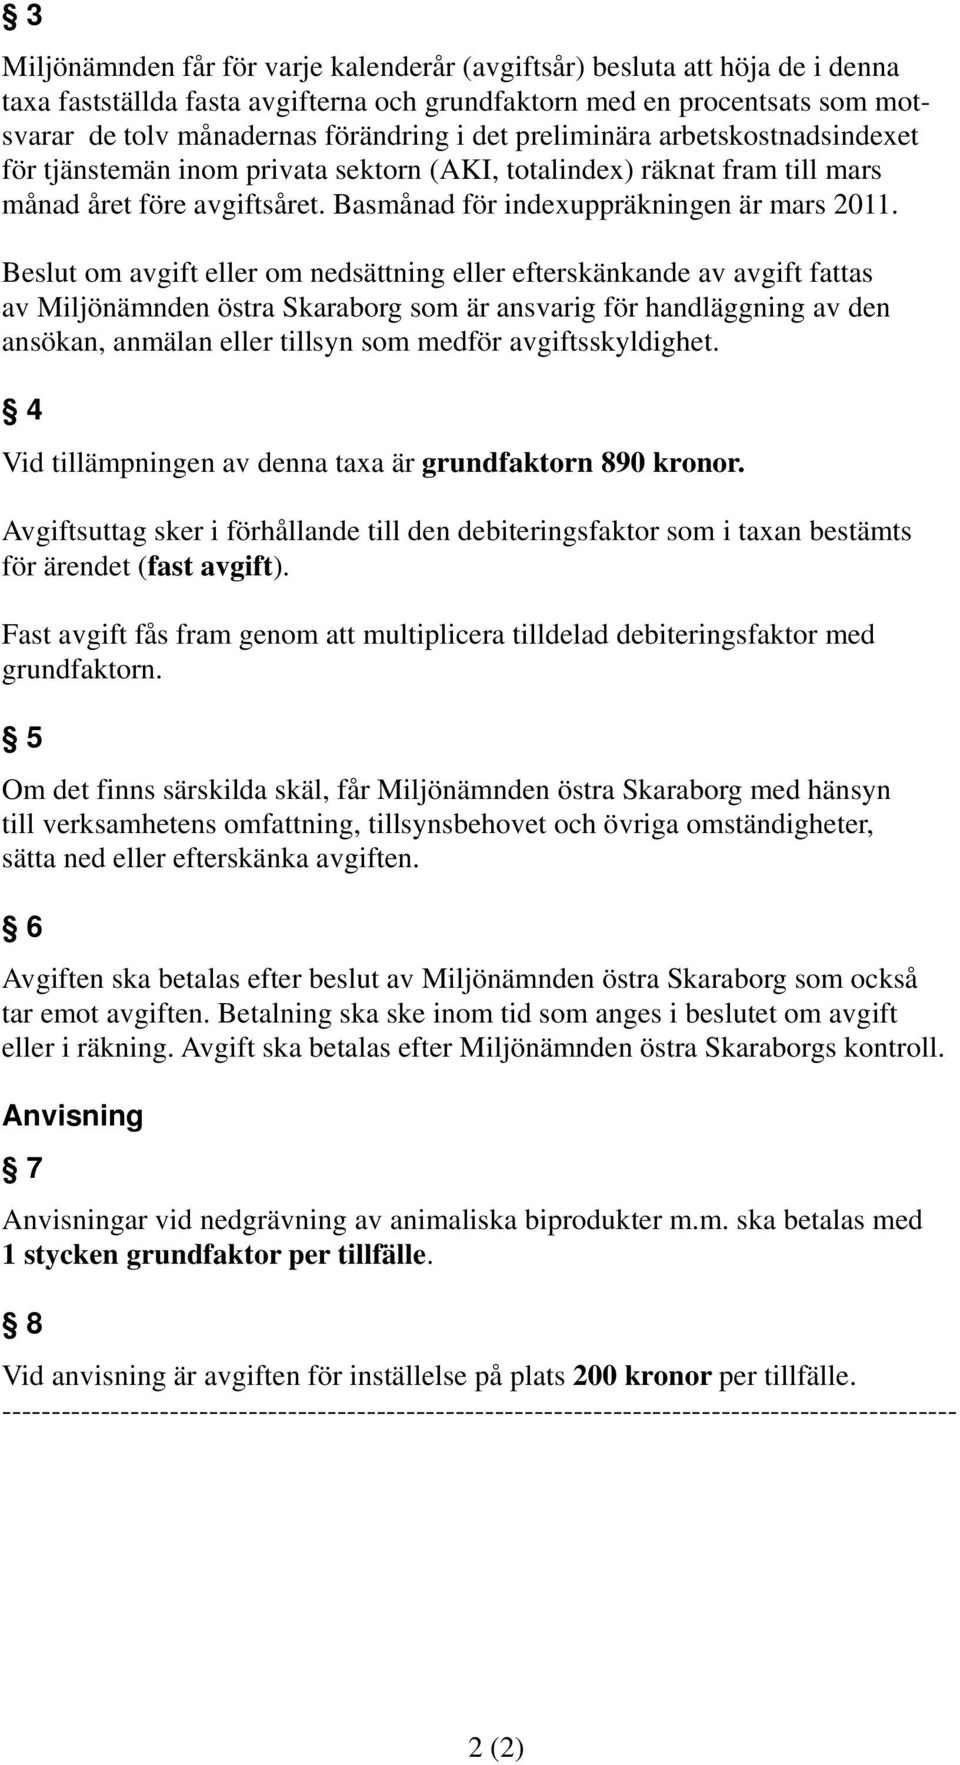 Beslut om avgift eller om nedsättning eller efterskänkande av avgift fattas av Miljönämnden östra Skaraborg som är ansvarig för handläggning av den ansökan, anmälan eller tillsyn som medför